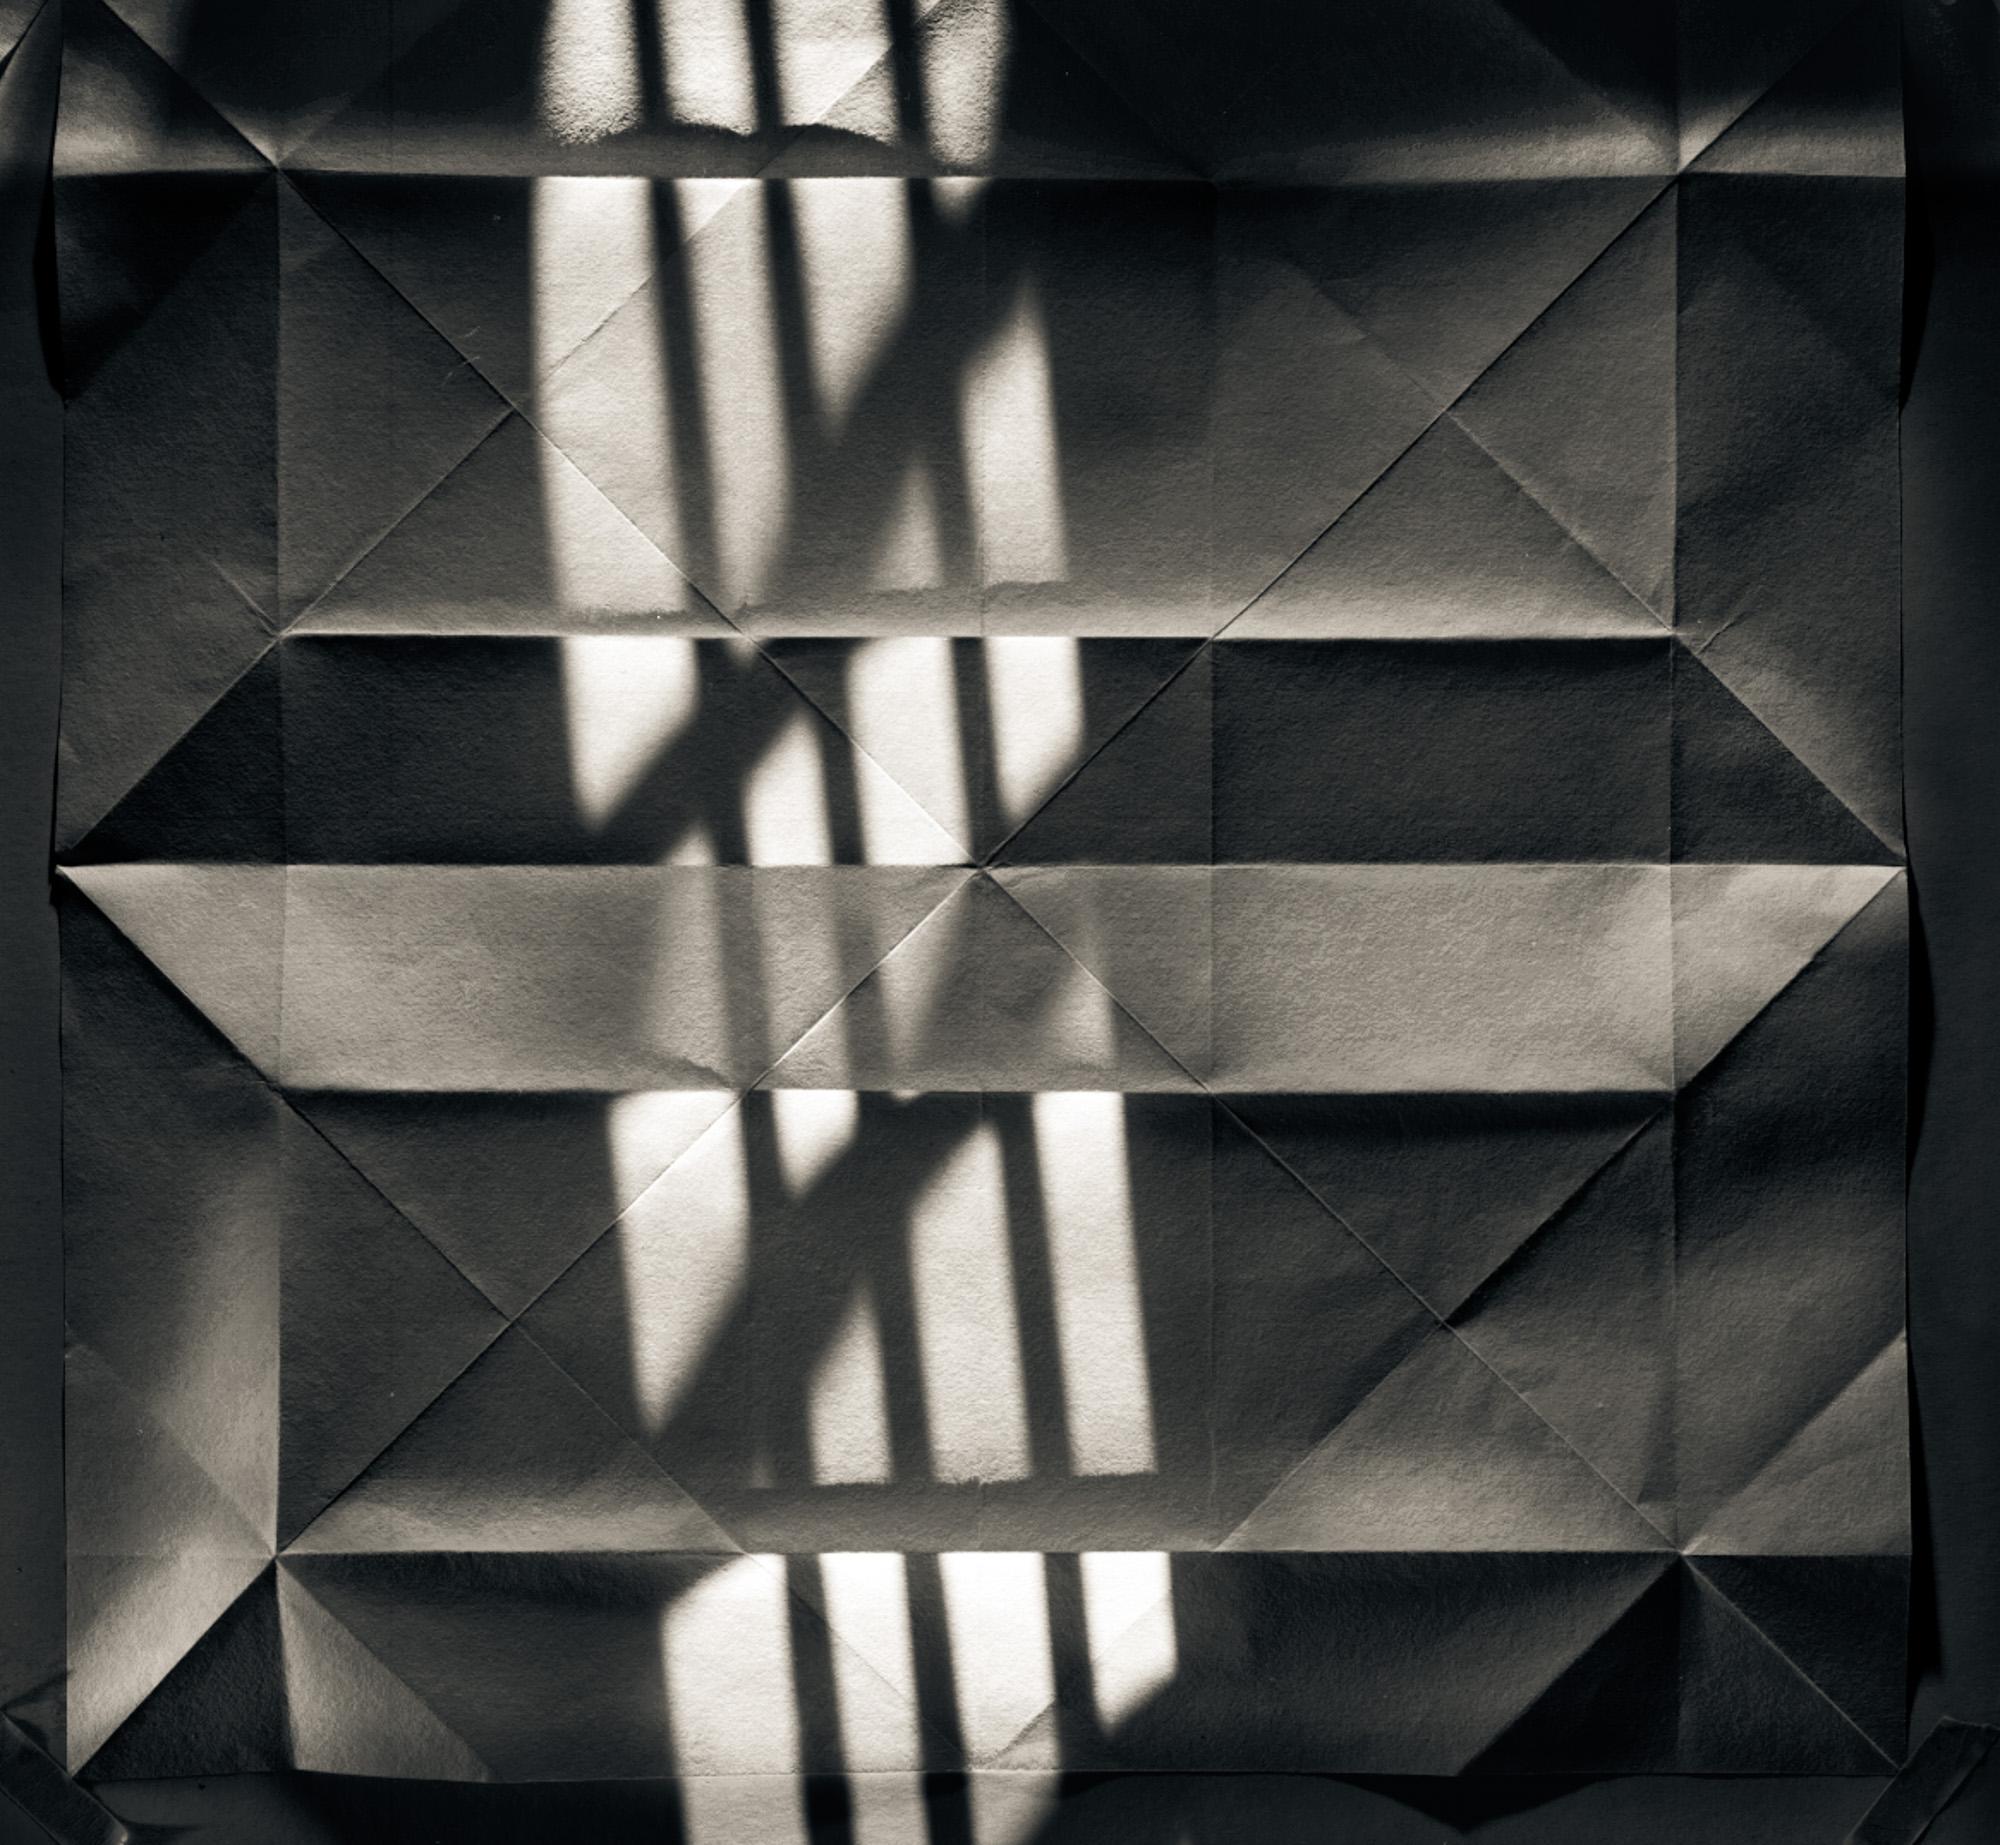  Photographie abstraite en noir et blanc en édition limitée  - Origami Folds n° 38